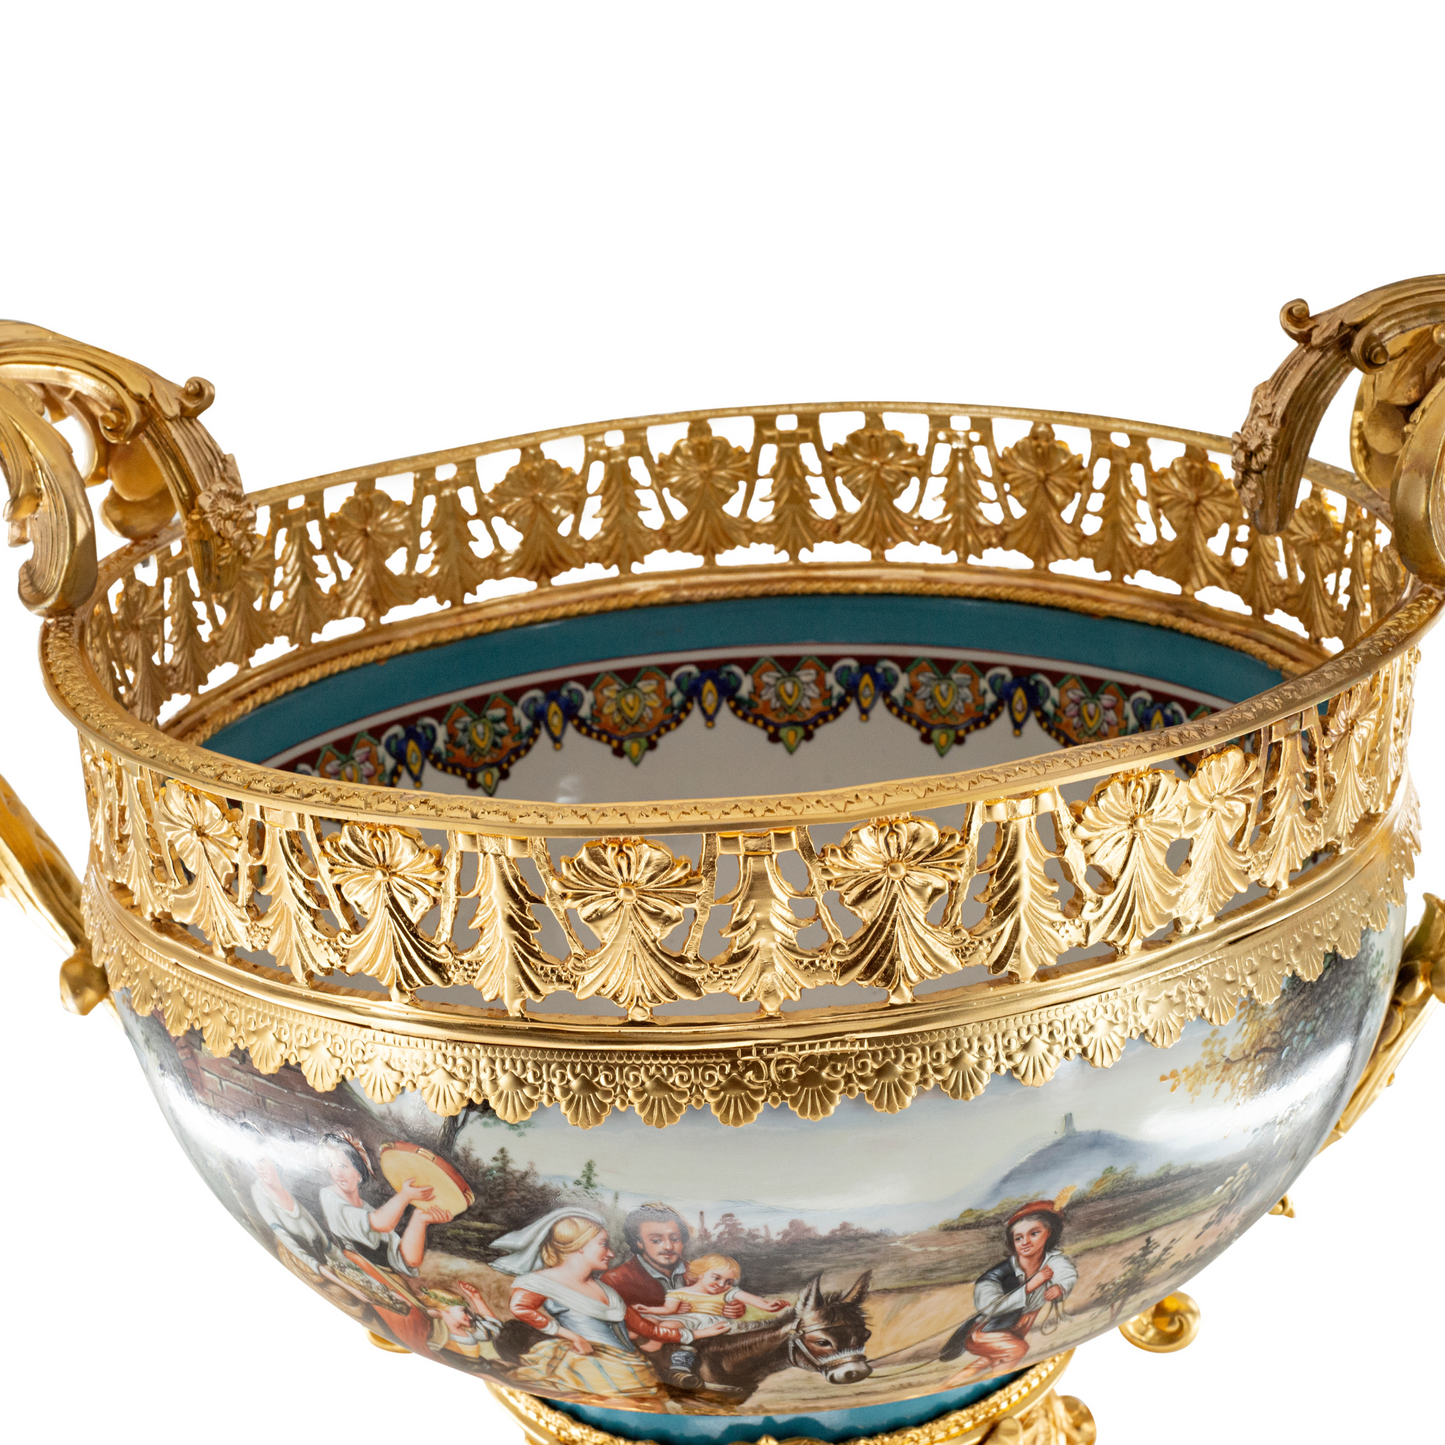 Porcelain Decorative Center Piece Bowl